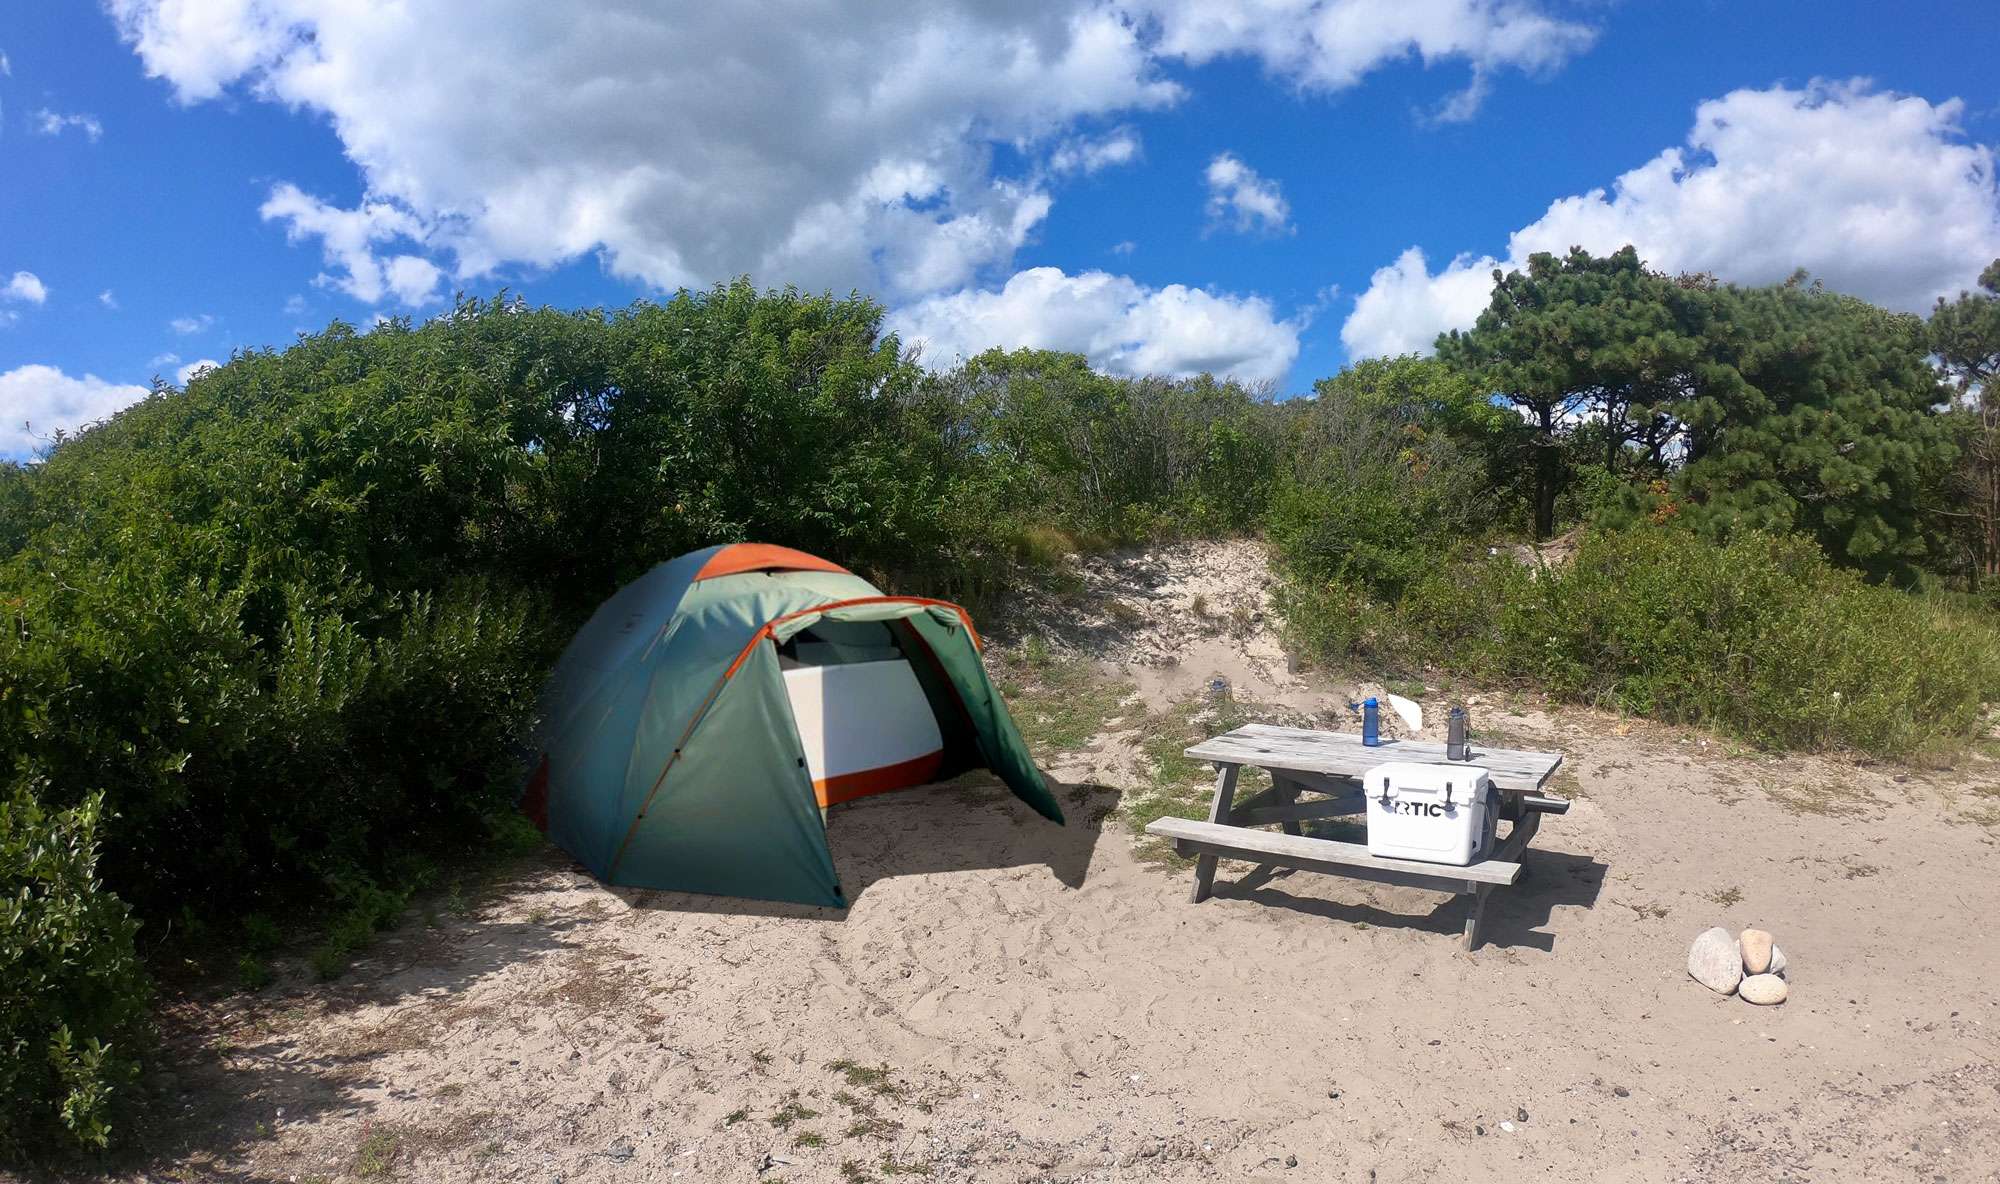 Camping at New England